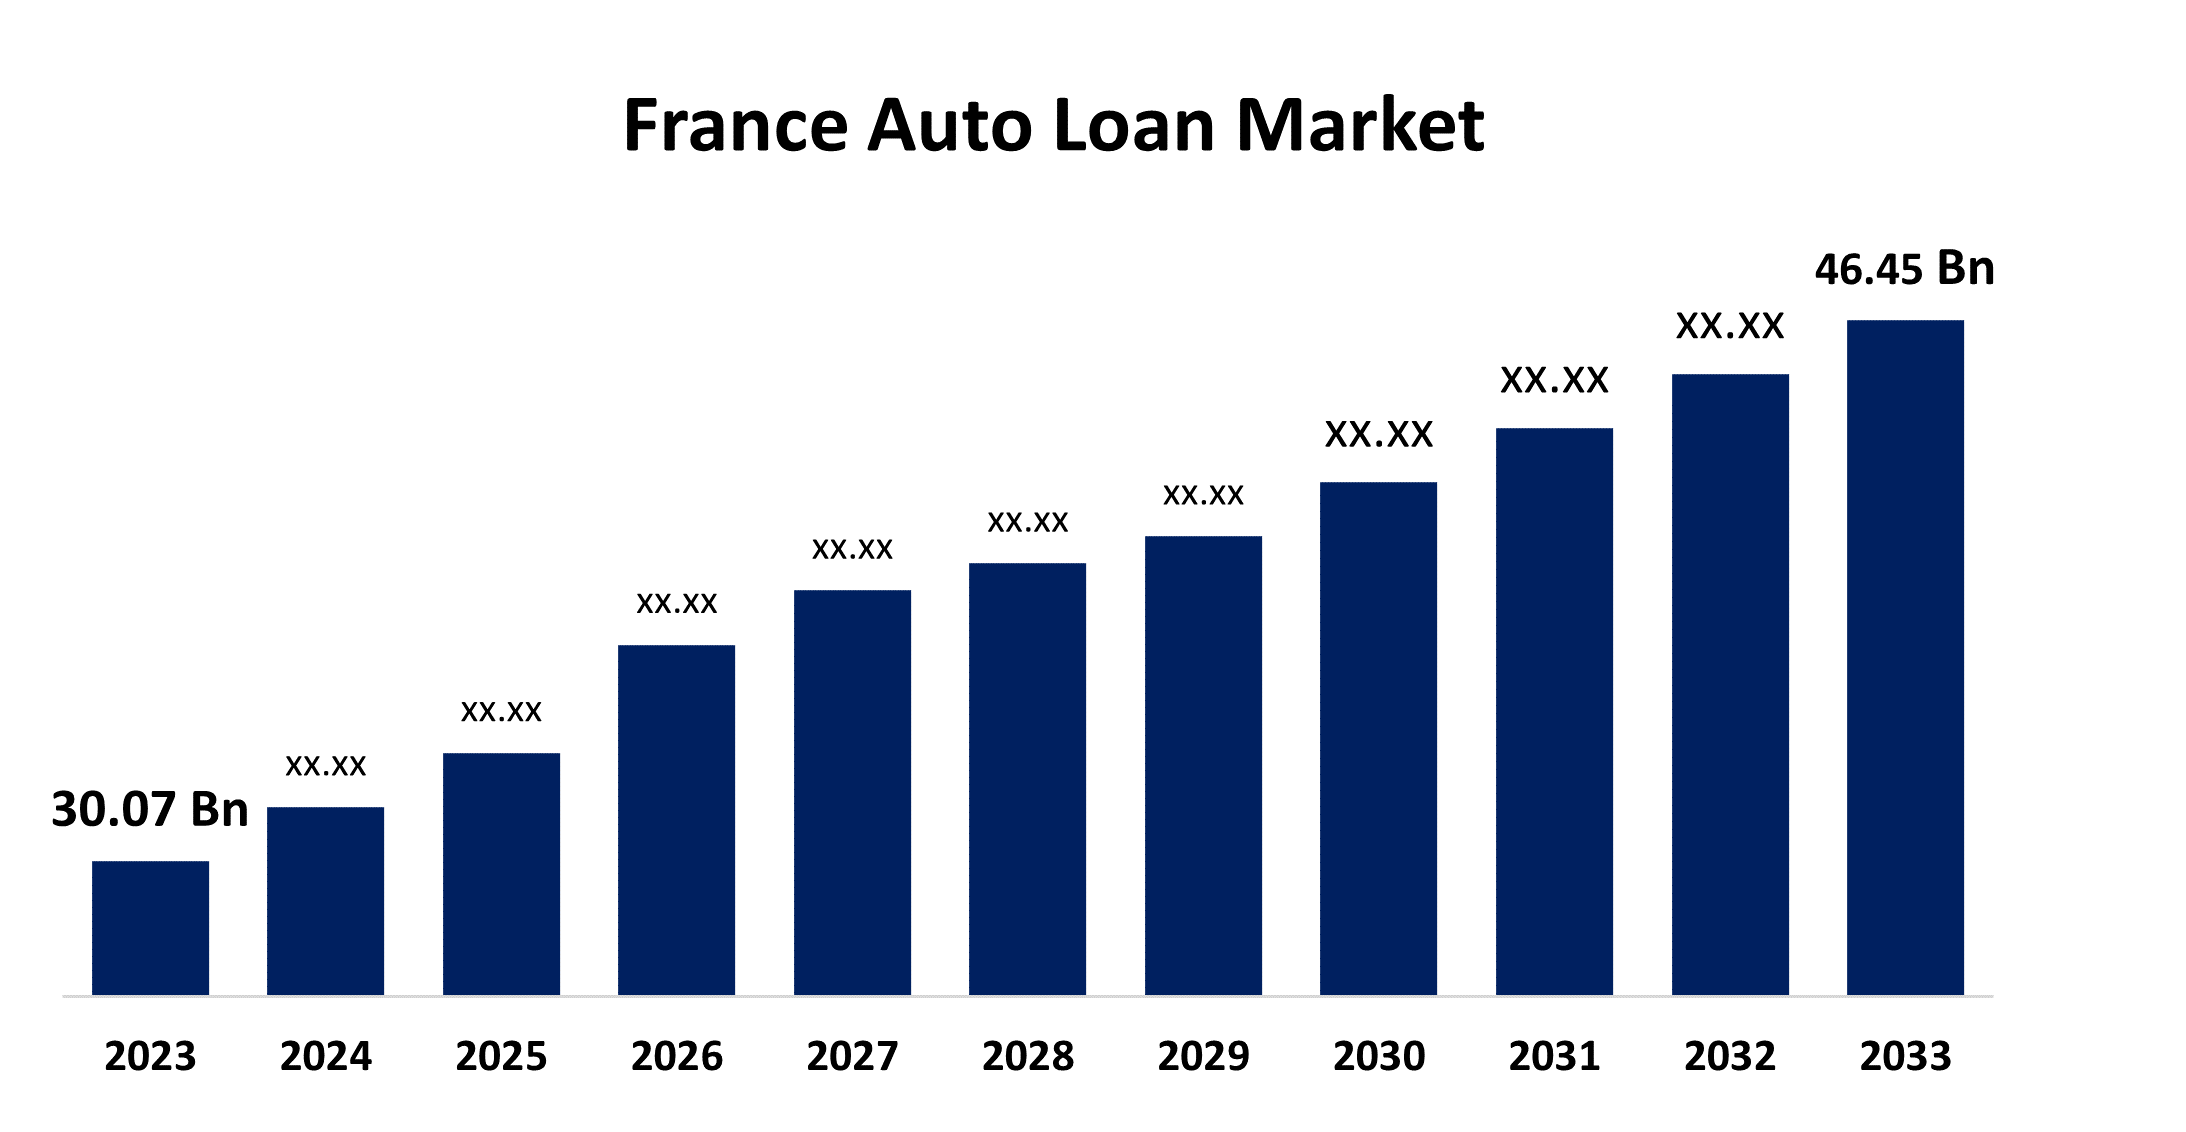 France Auto Loan Market